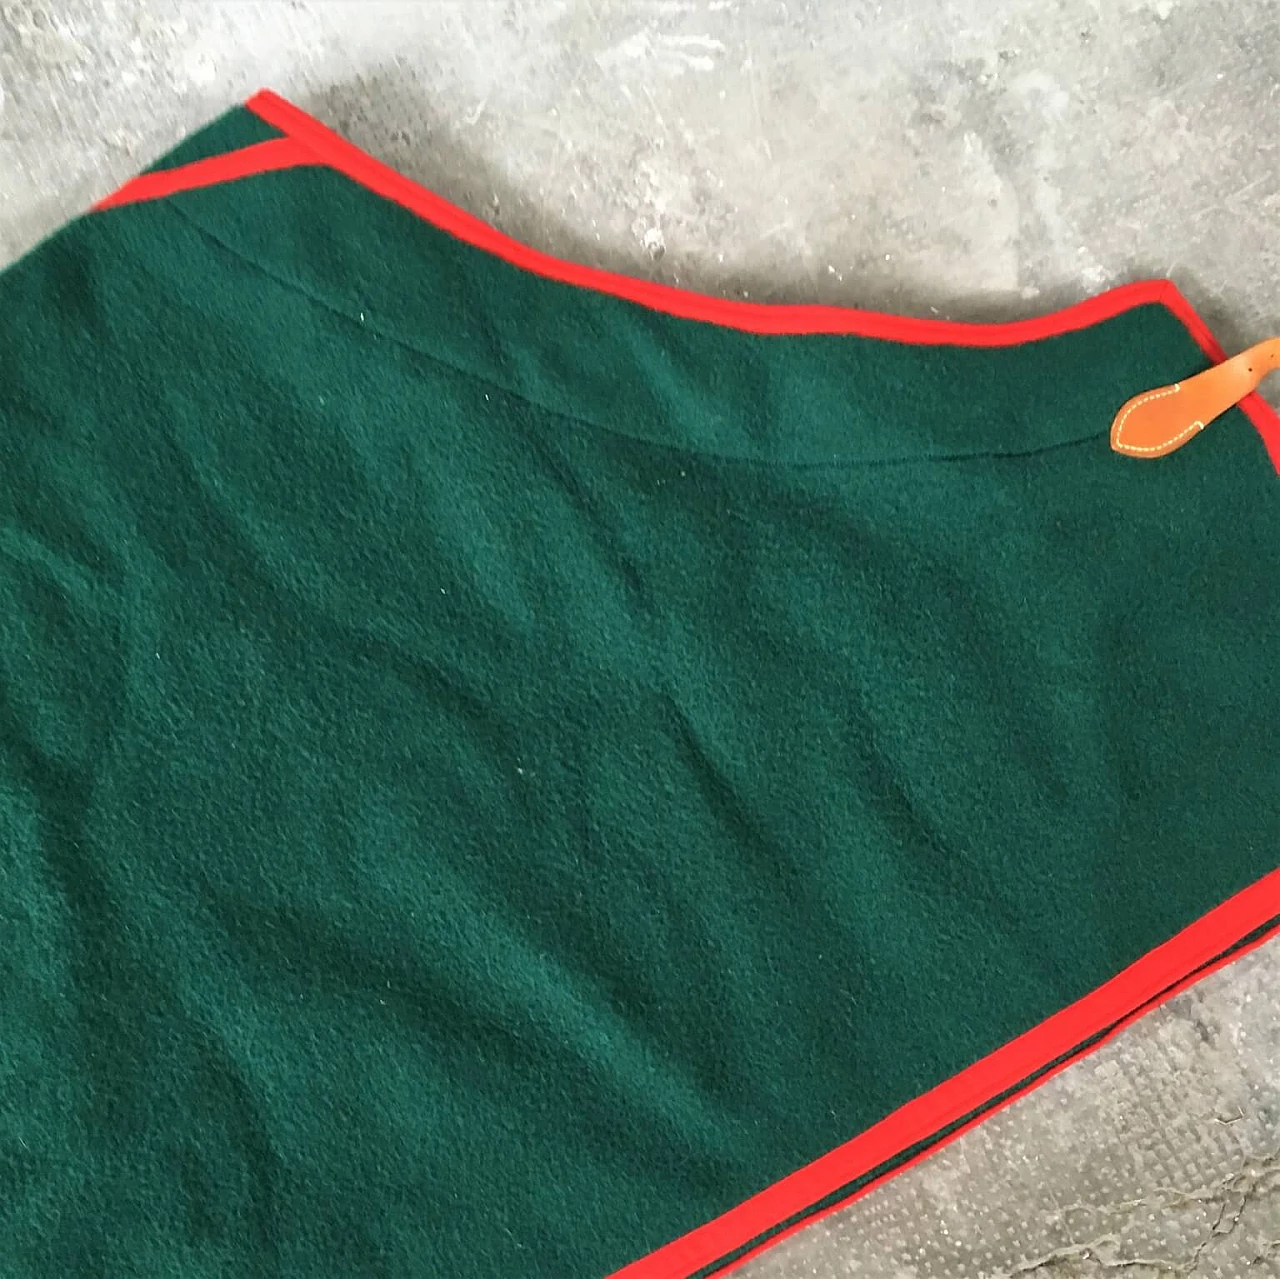 Coperta verde Selleria Pariani, realizzata a mano, pura lana vergine, profili rossi e cuoio, 1980 1071713